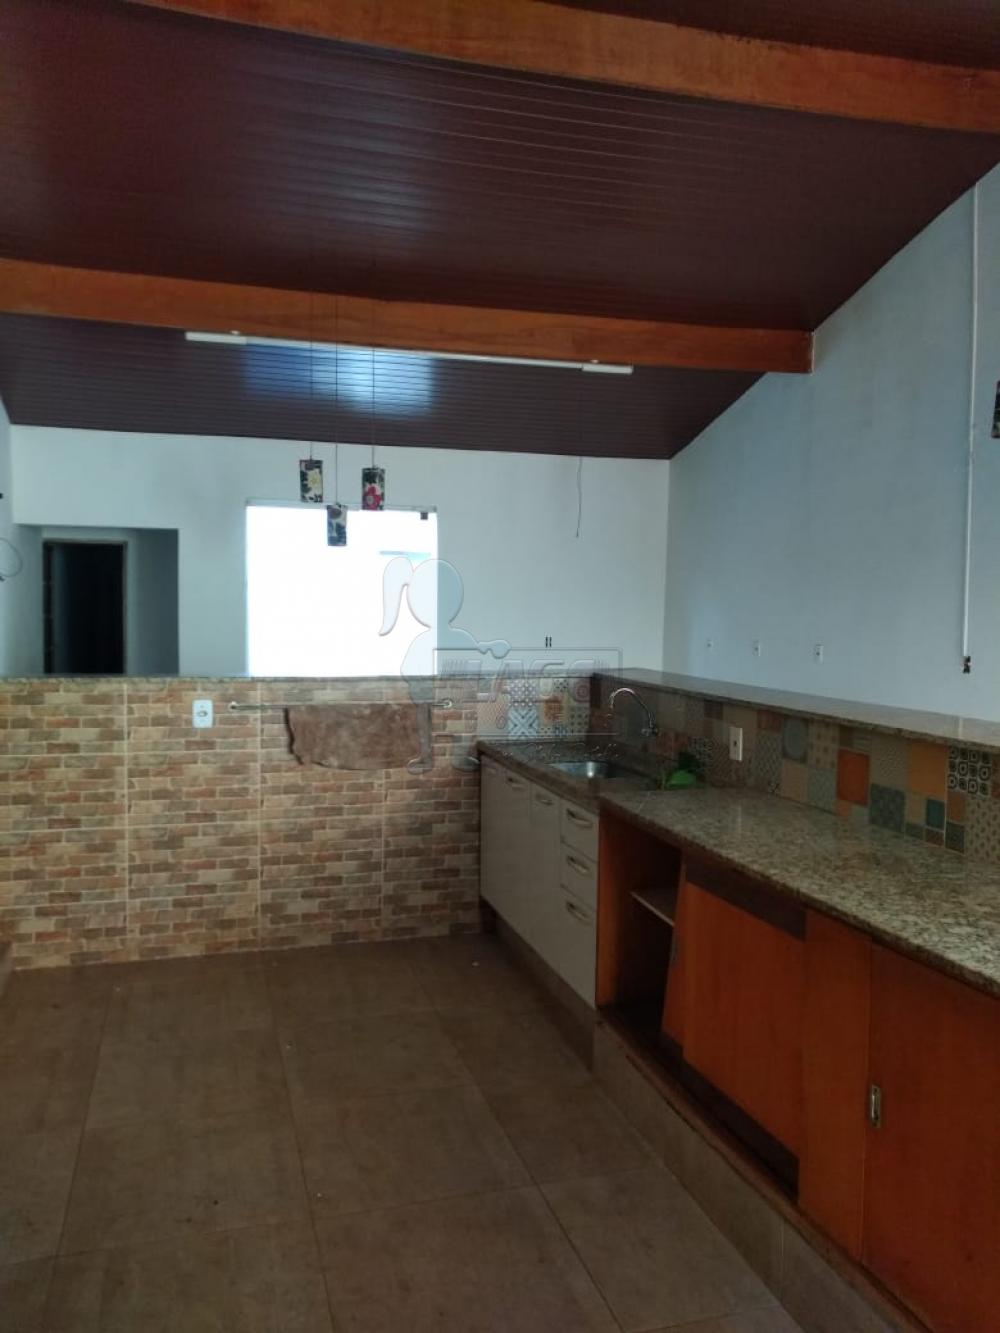 Comprar Casa / Padrão em Ribeirão Preto R$ 230.000,00 - Foto 16